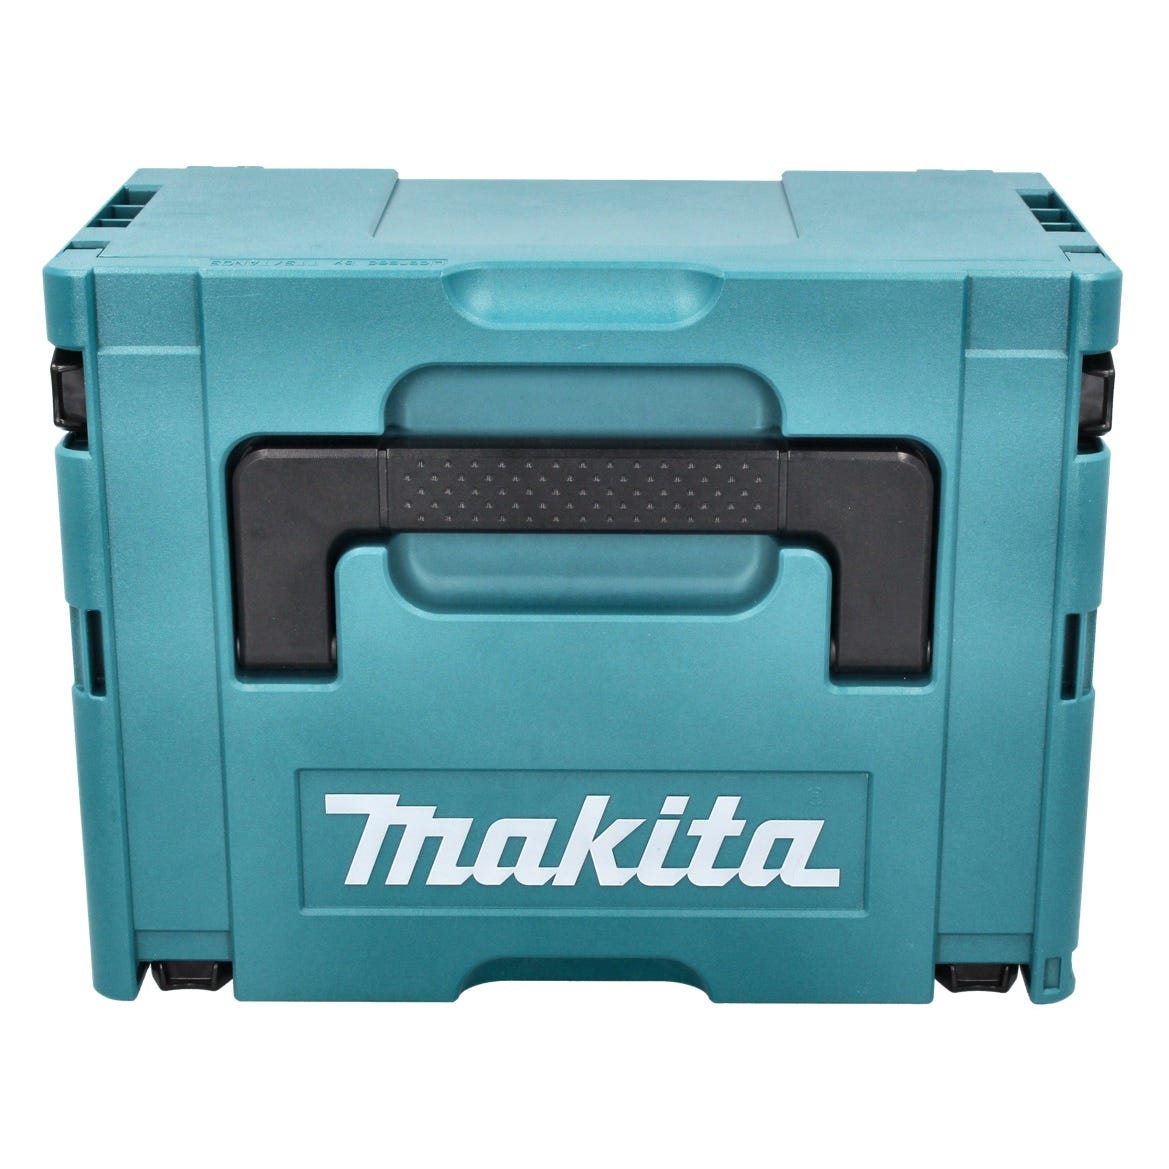 Makita DSS 610 T1J Scie circulaire 18 V 165 mm + 1x batterie 5,0 Ah + Makpac - sans chargeur 2